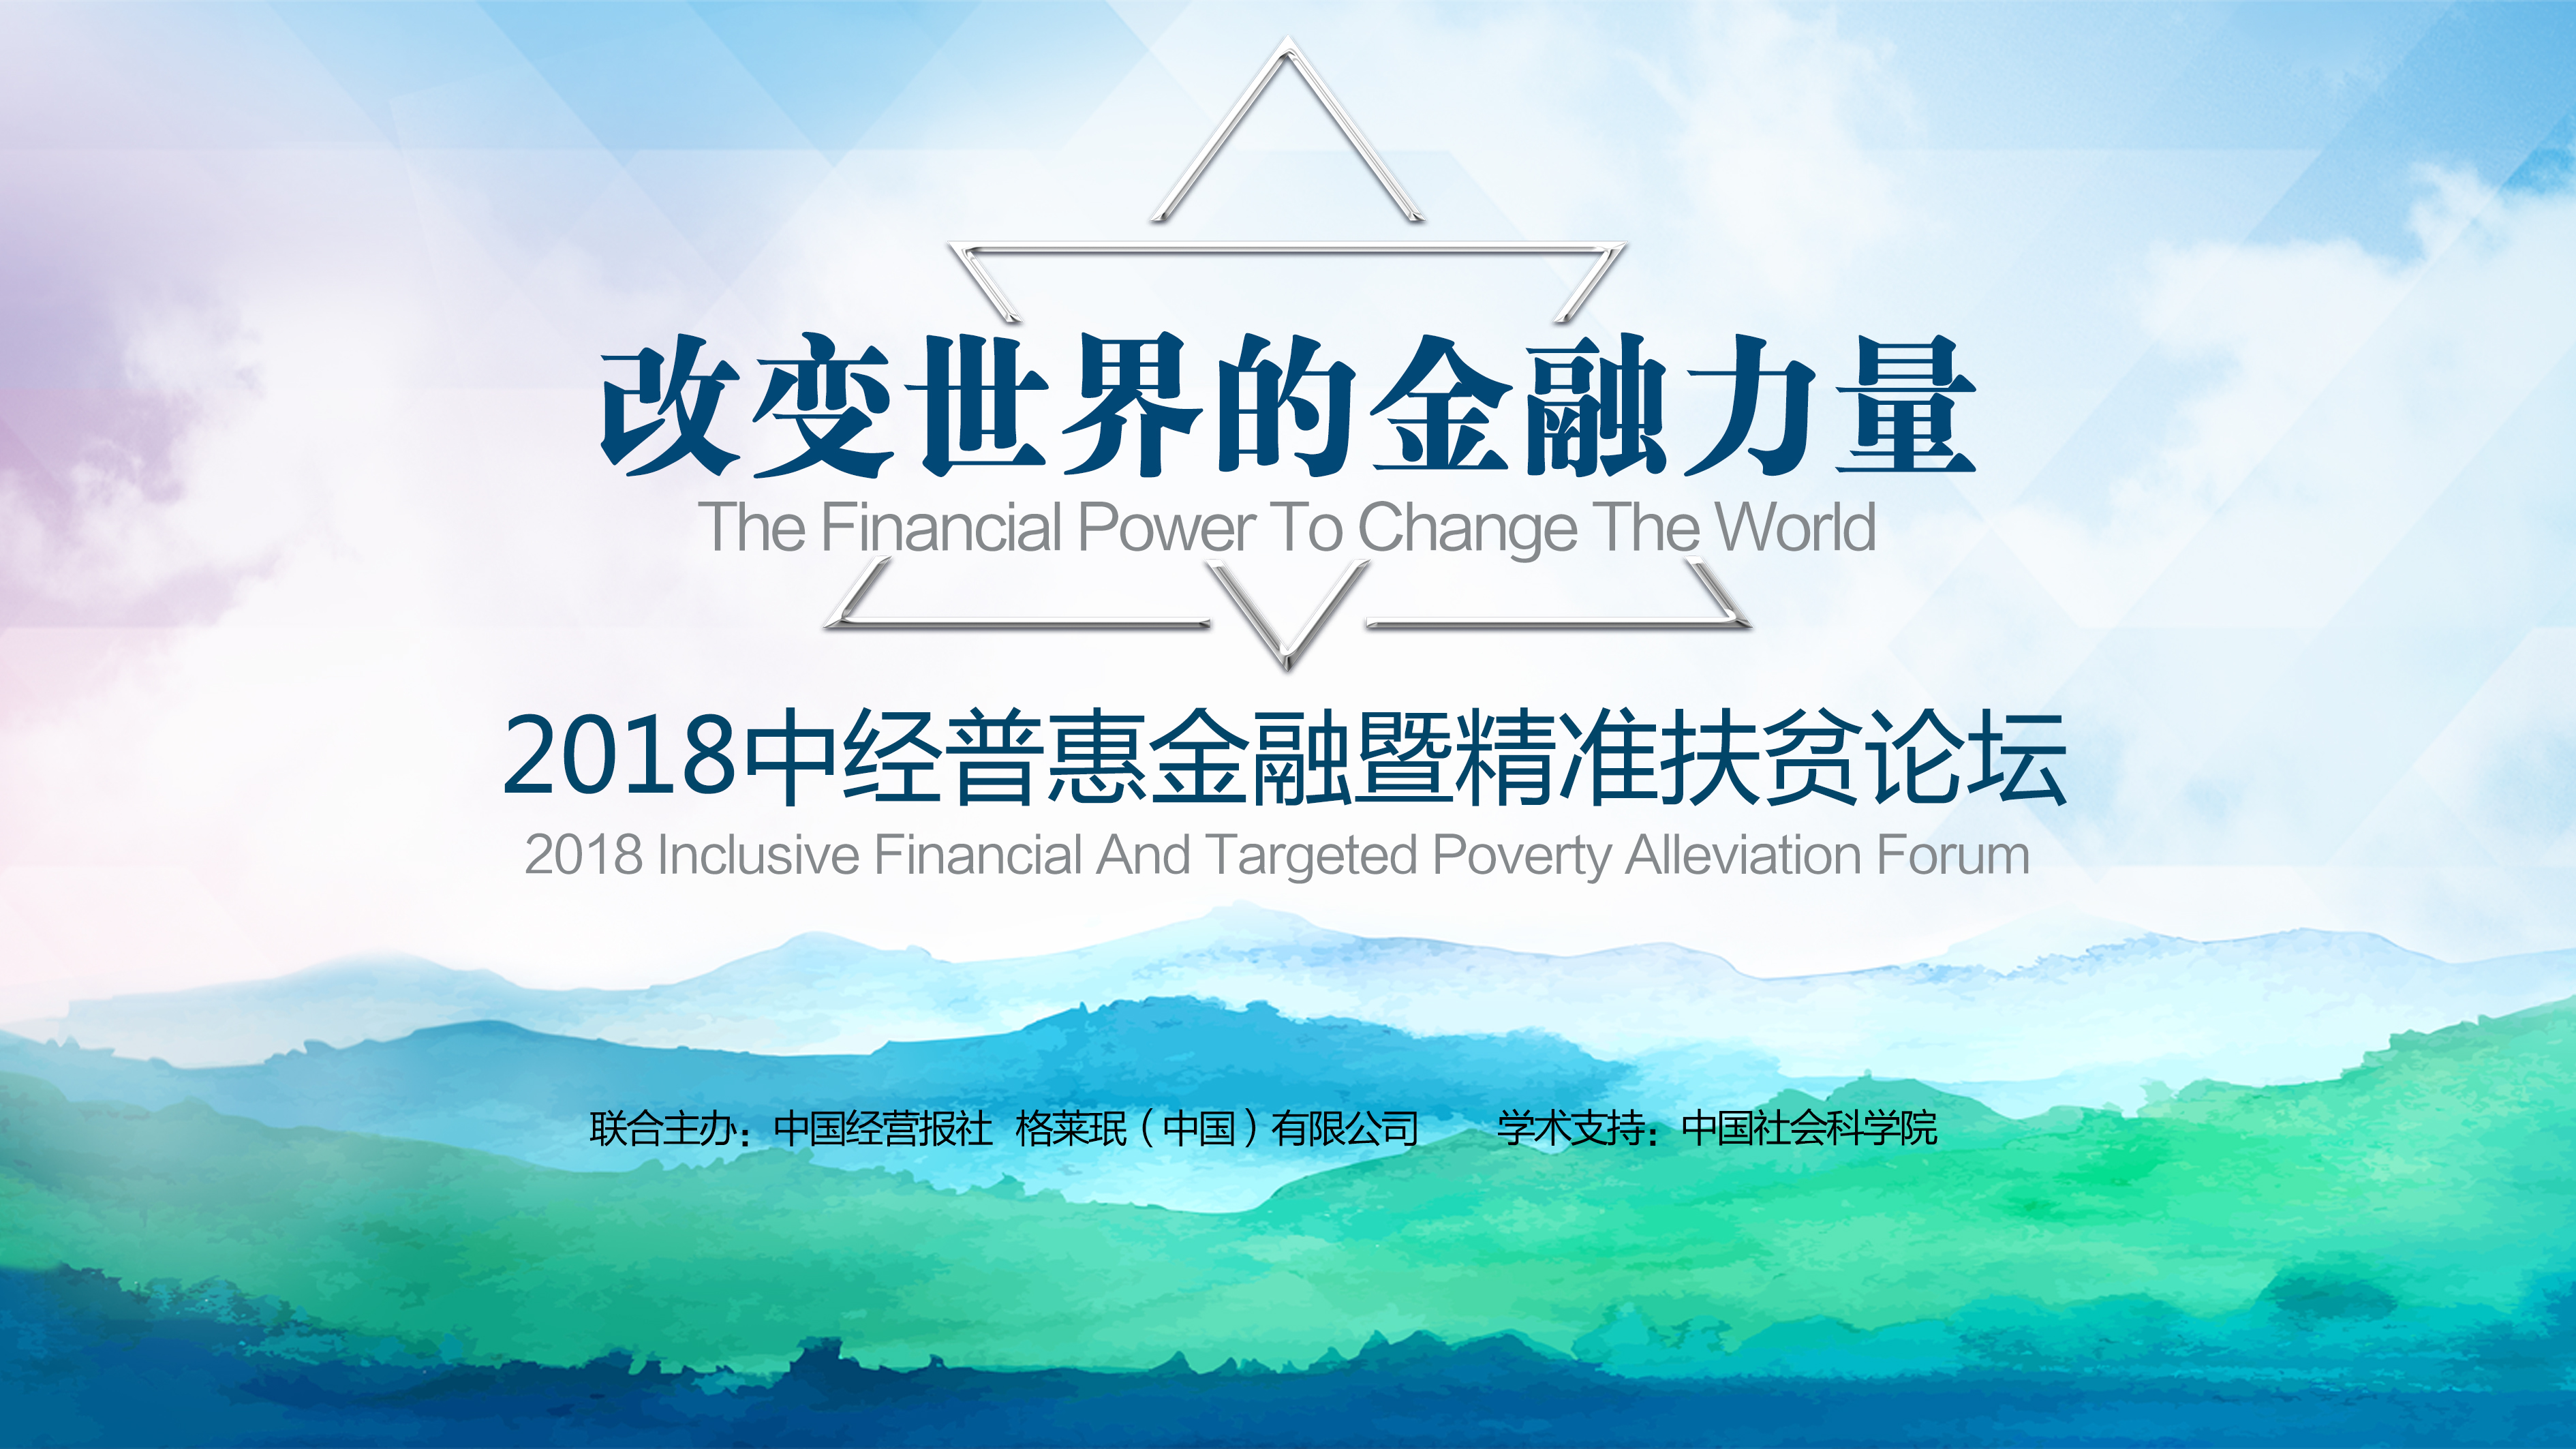 2018尤努斯中国周 | 改变世界的金融力量—中经普惠金融暨精准扶贫论坛